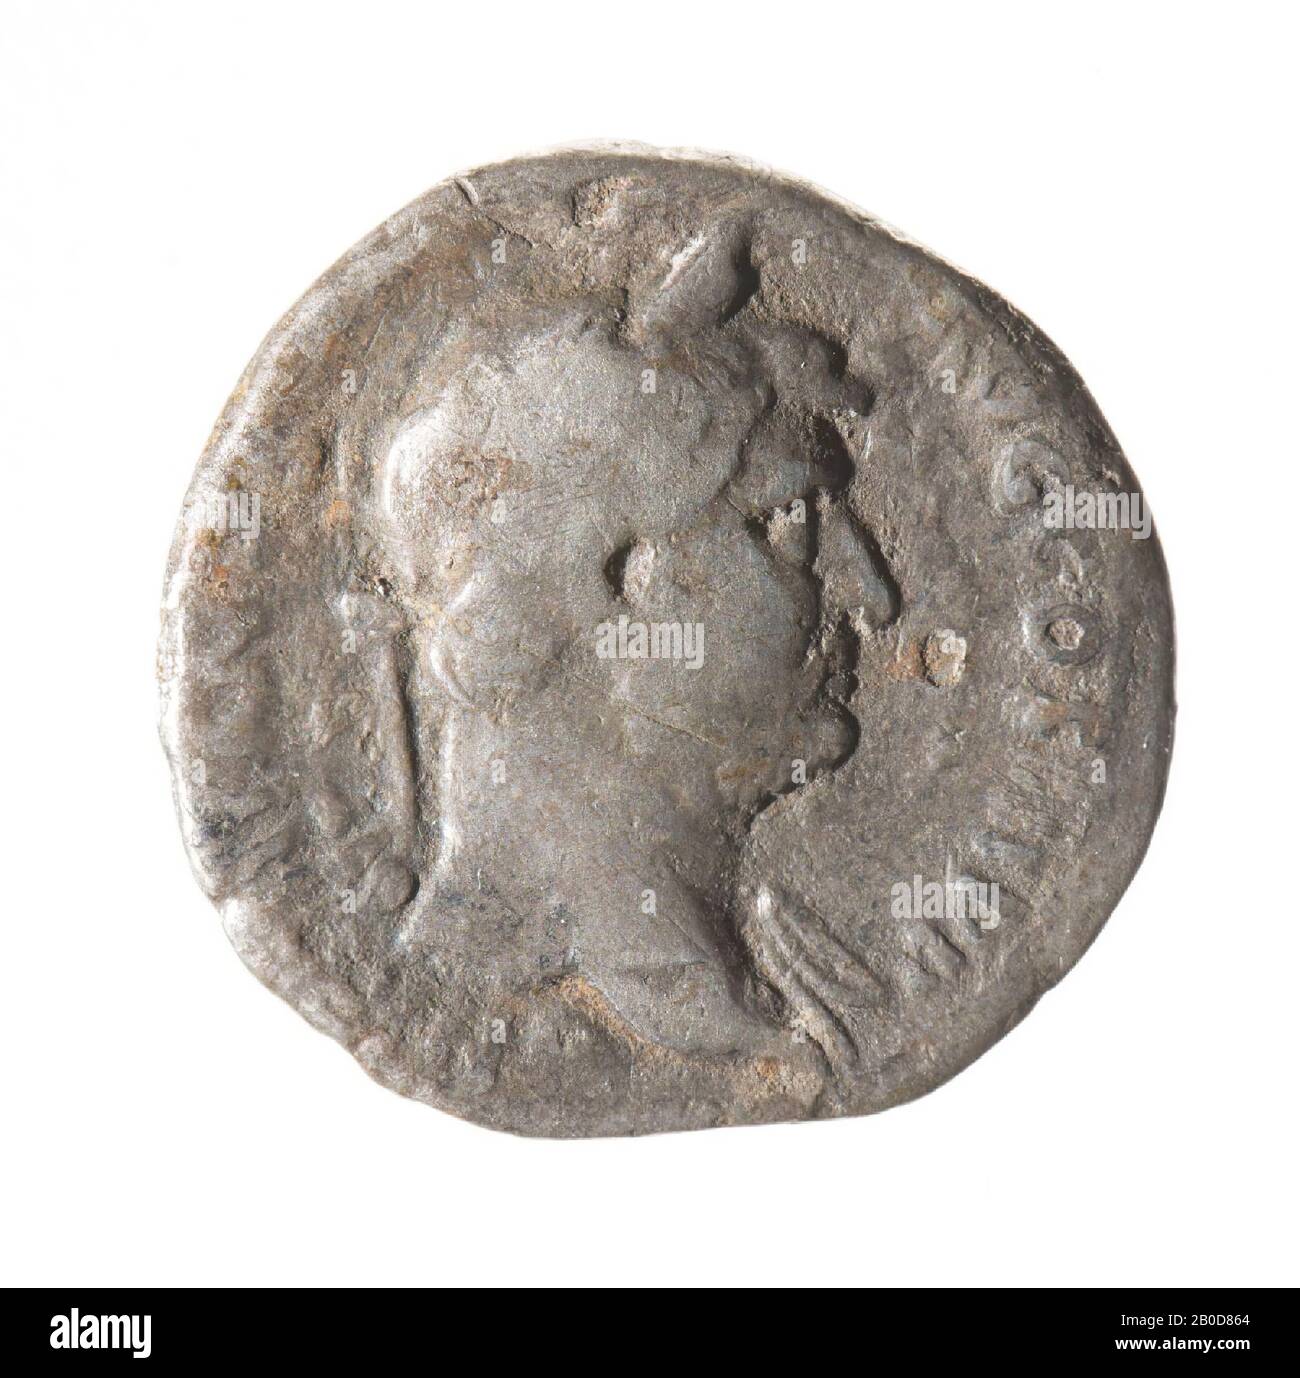 Obverse: Hadrian, rechts, geehrt. Aufschrift: HADRIANVS AVG COS III P P. Reverse: Moneta, stehend, links, gekleidet. Waage in der rechten Hand und Cornucopia in der linken Hand. Umschrift: Moneta AVG., Münze, Denarius von Hadrian, Metall, Silber, Diam: 1,8 cm, WT. 2,59 Gramm, 134-138 n.Chr., unbekannt Stockfoto